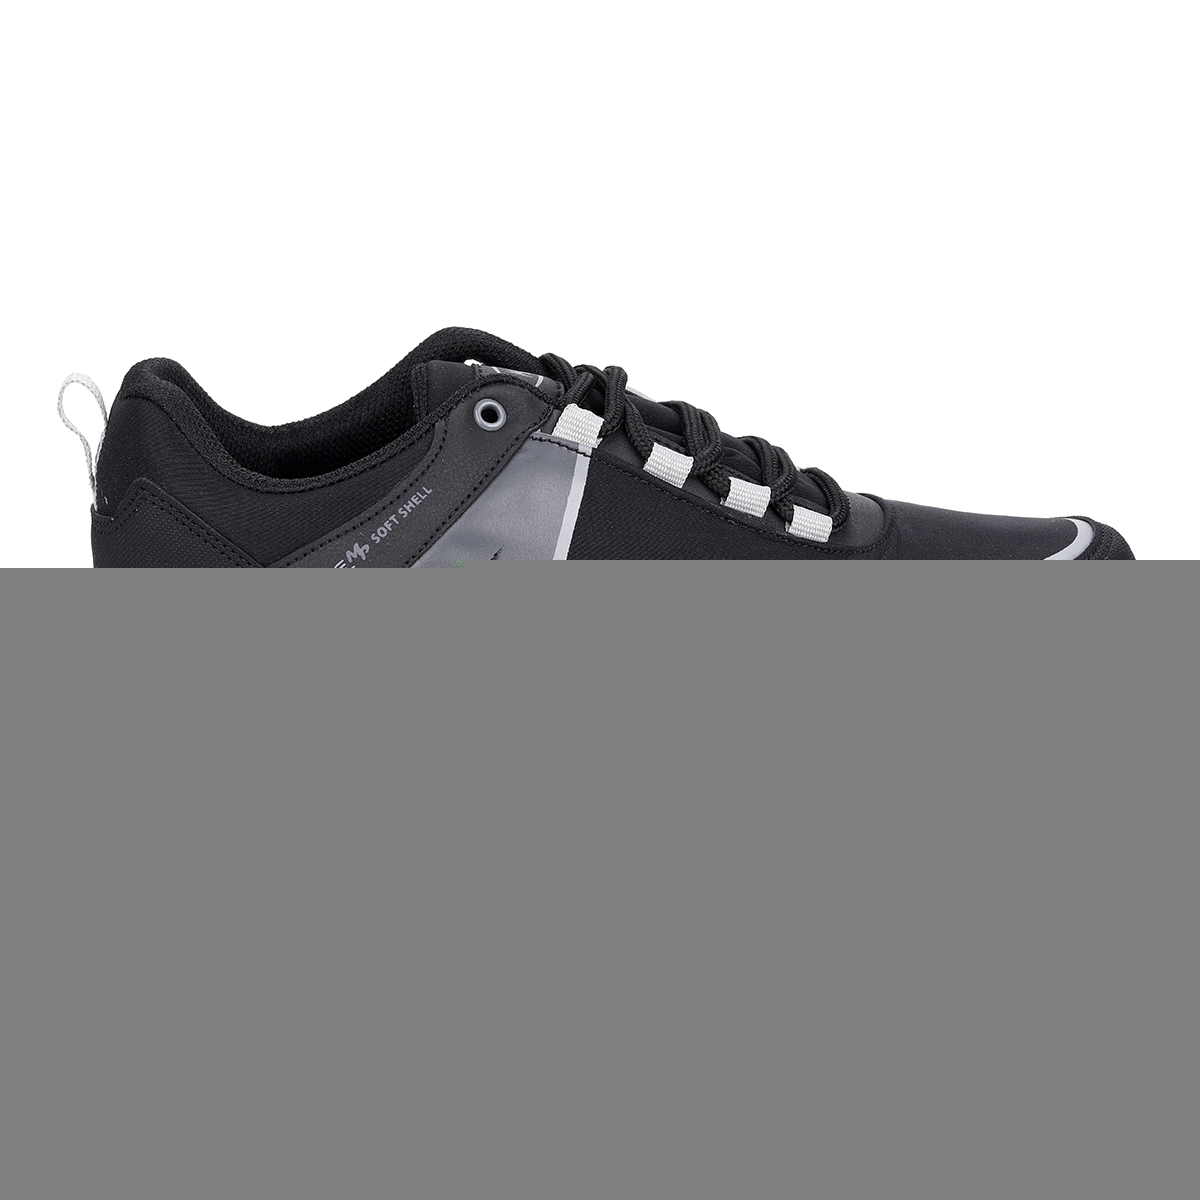 Flo 212-2183MR Günlük Bağcıklı Erkek Spor Ayakkabı Siyah - Gri. 2